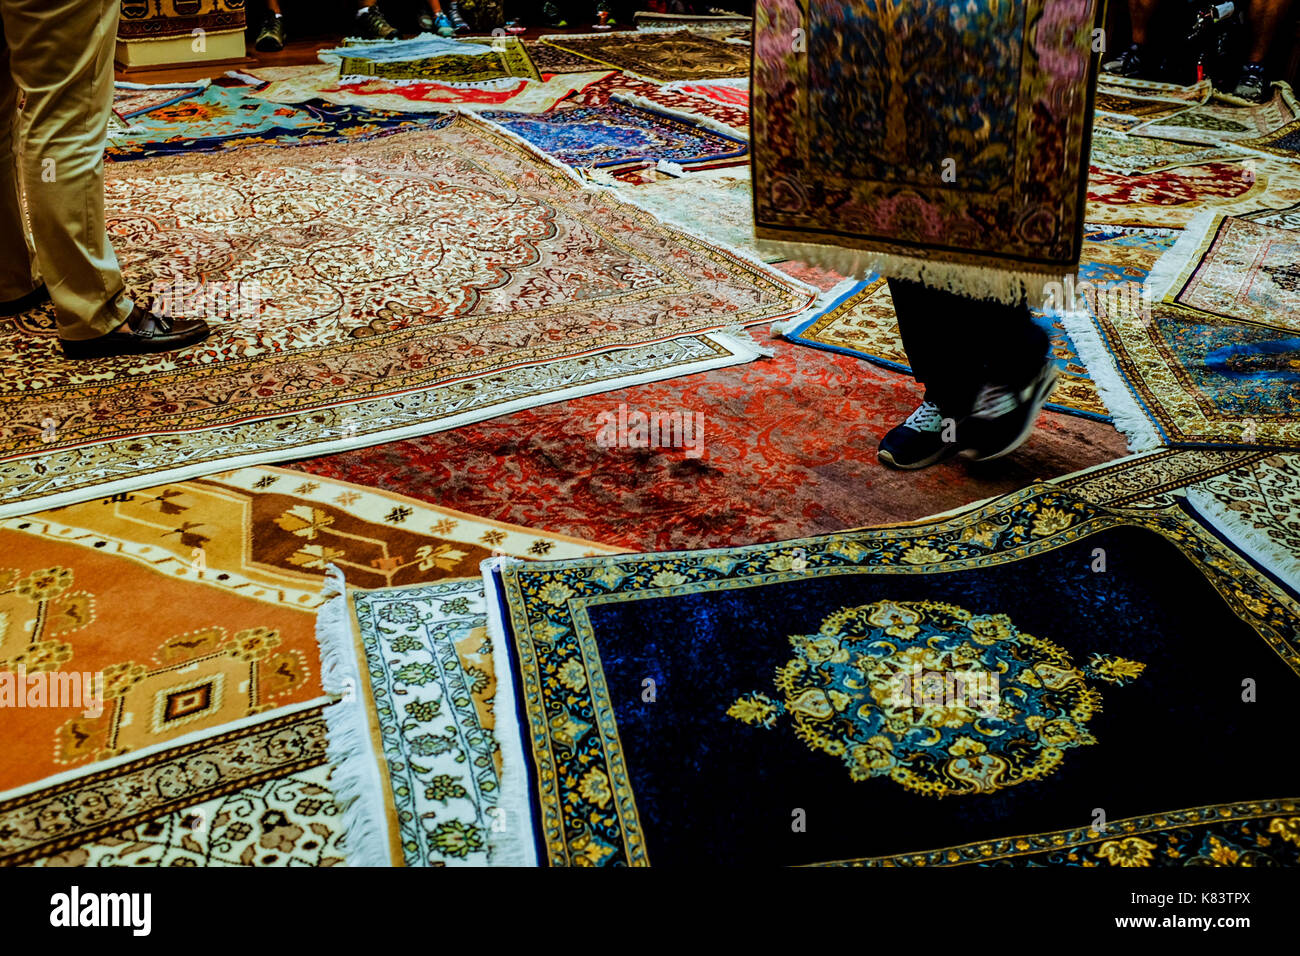 Menschen besuchen einen Teppich Verkauf demonstrieren in Kusadasi, Türkei Juli 6, 2016. Die Türkei ist für seine qualitativ hochwertigen Teppichen bekannt, aber manchmal sind Fälschungen. Stockfoto